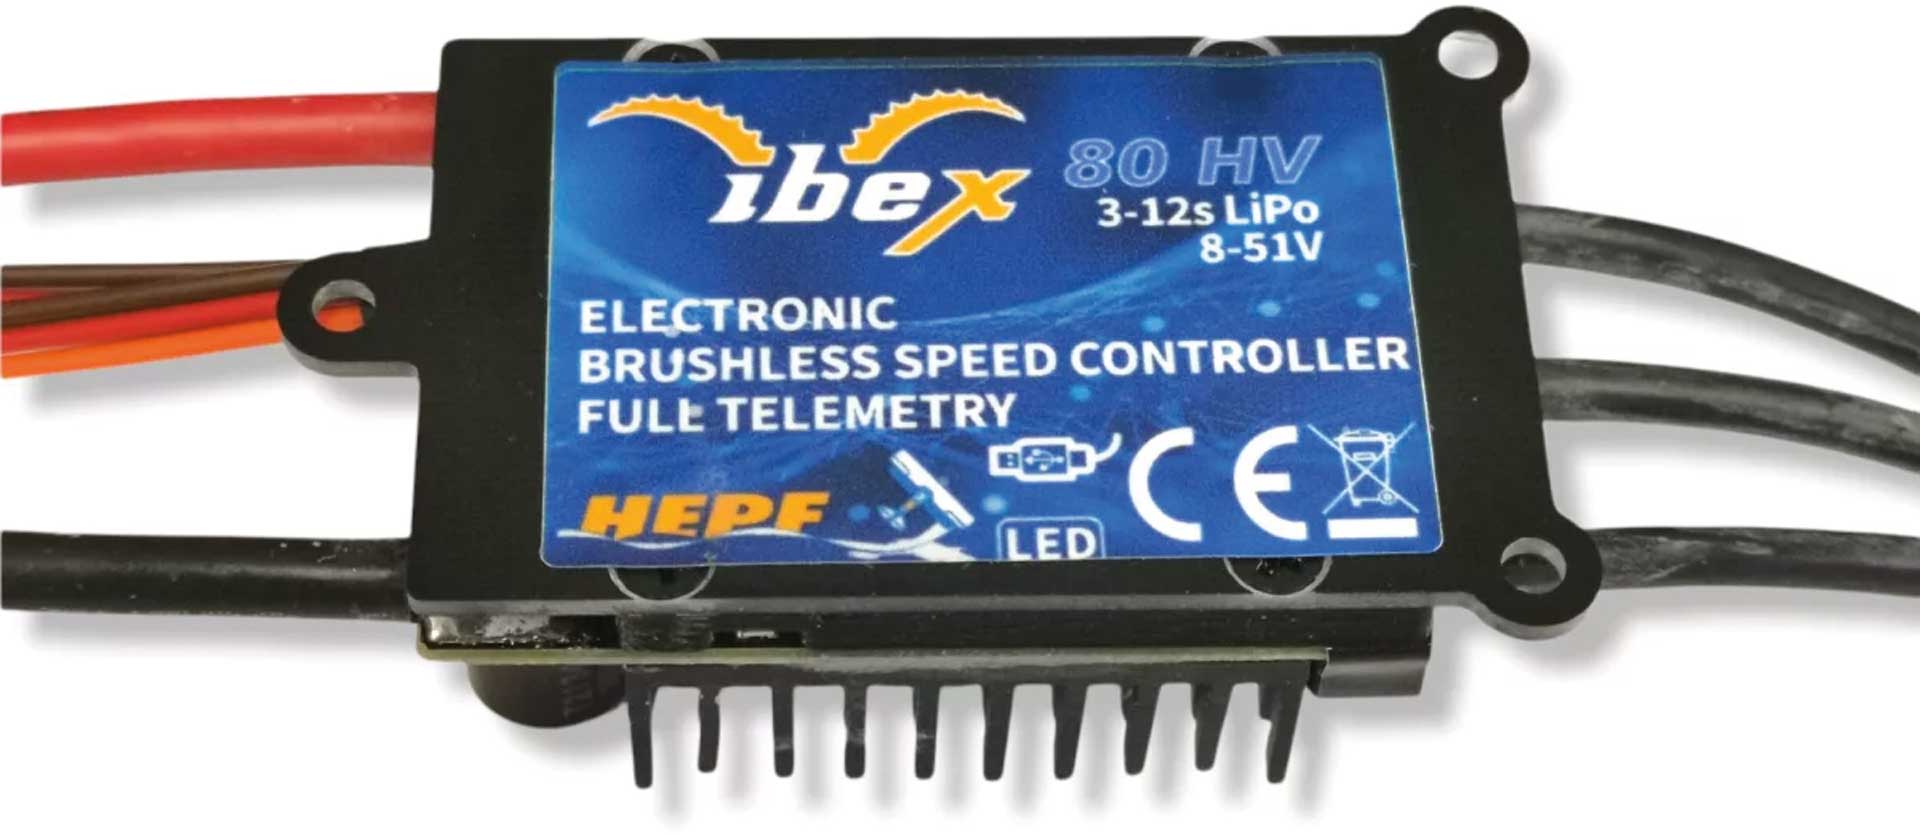 HEPF Contrôleur Brushless Ibex 80A avec Télémétrie pour le spectre